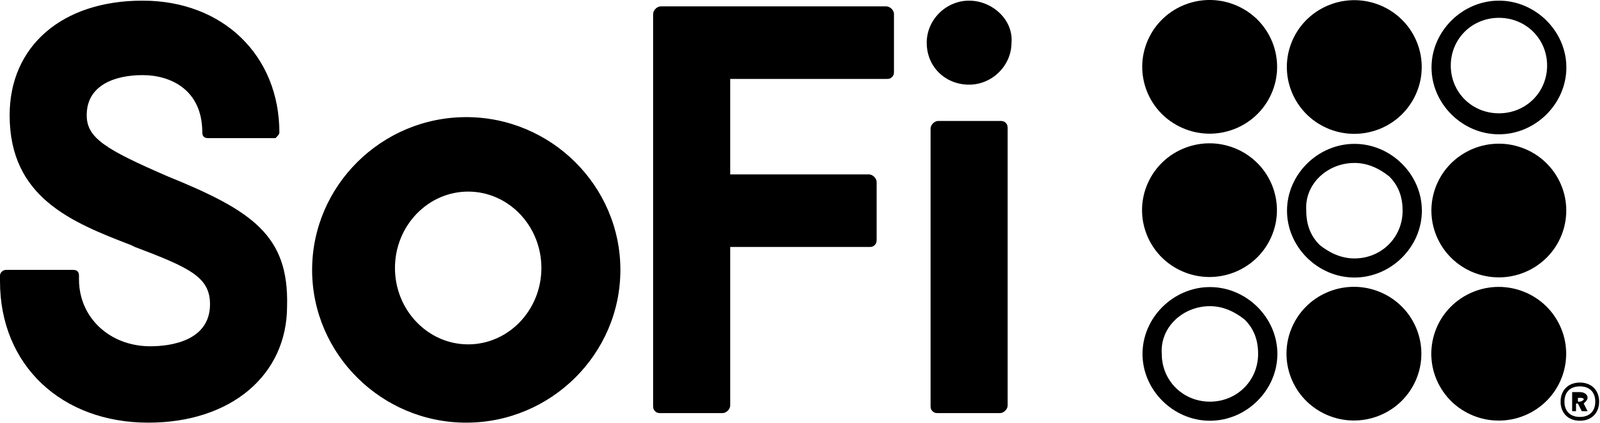 sofi logo black.png